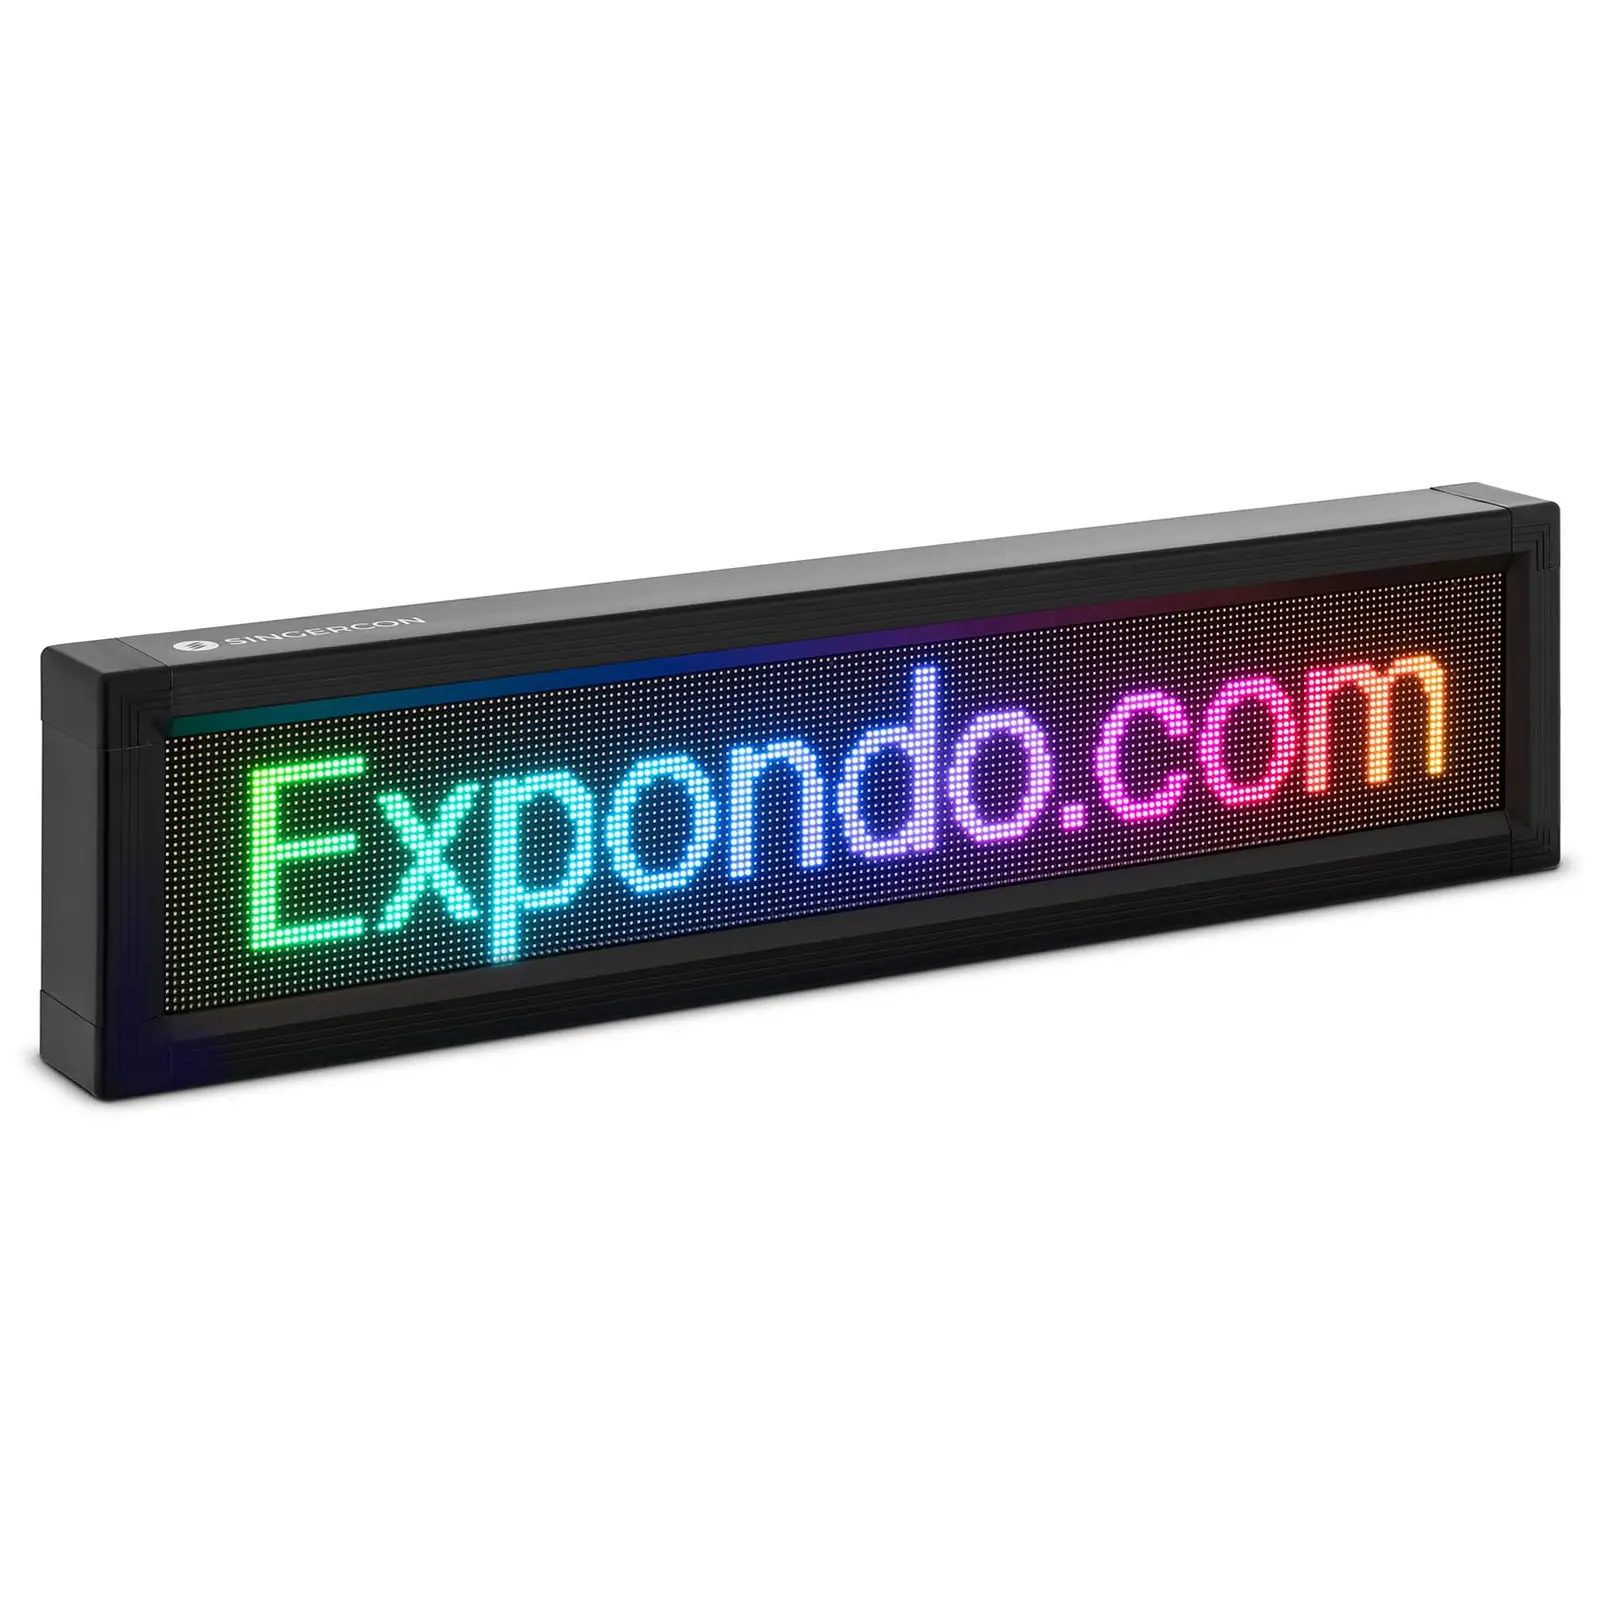 Painel LED publicidade - 192 x 32 LEDs coloridos - 67 x 19 cm - programável através de iOS e Android